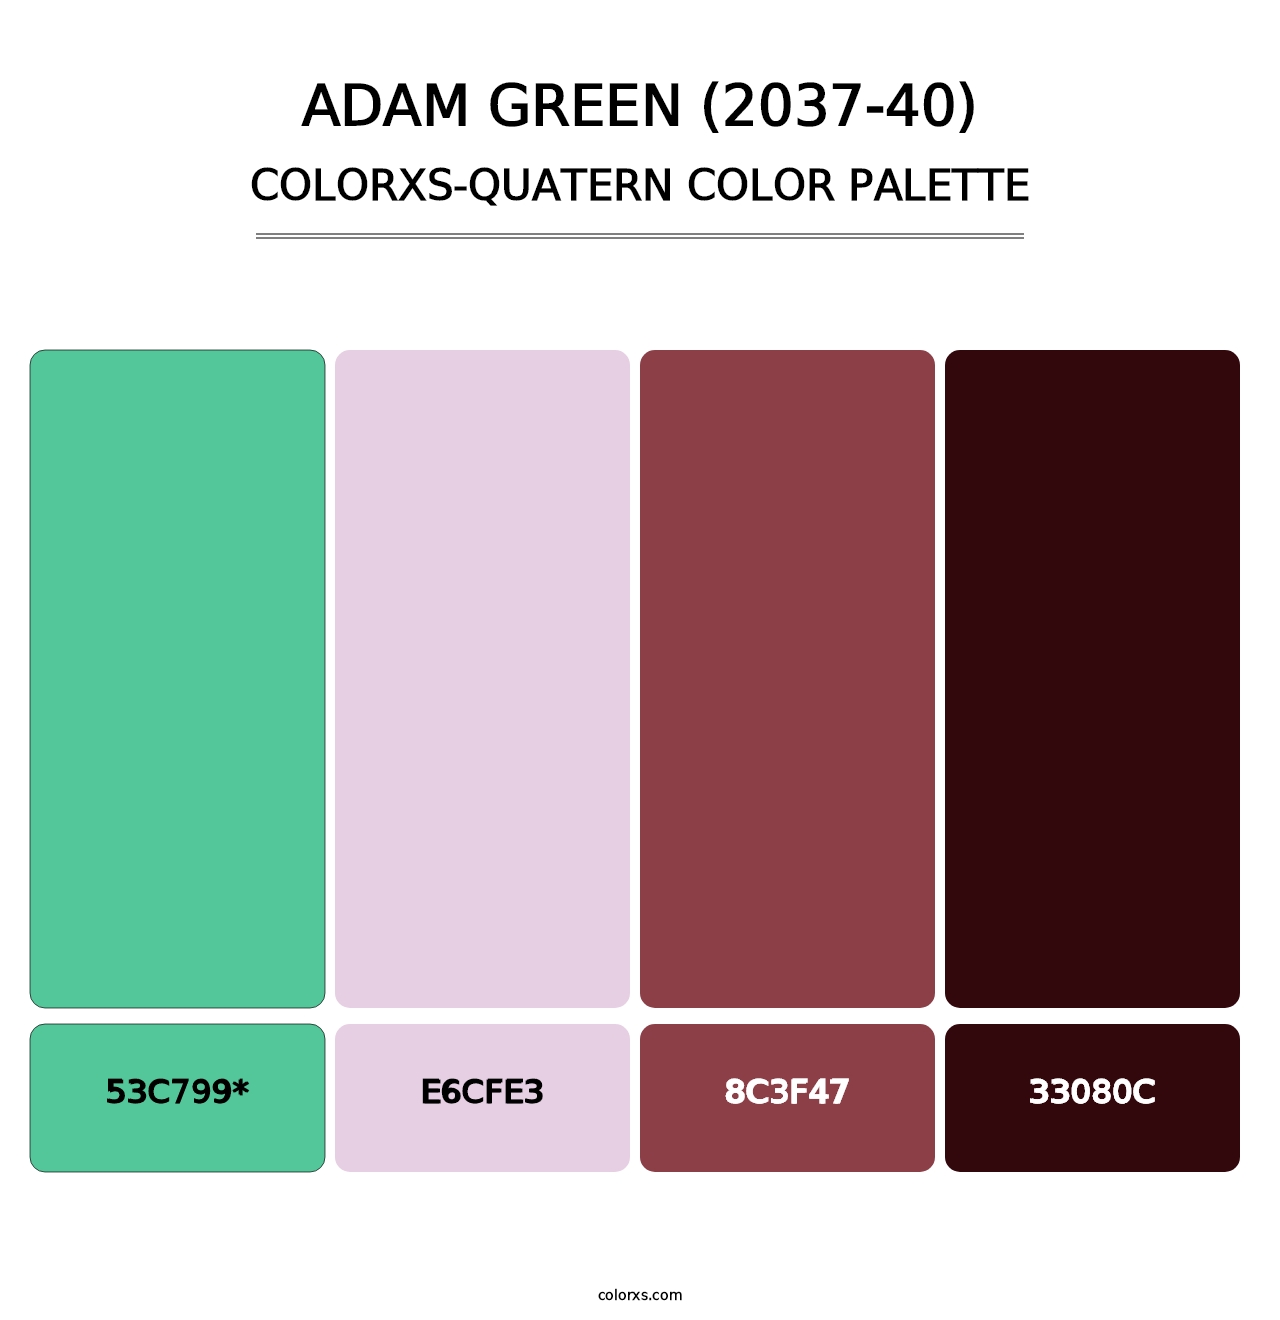 Adam Green (2037-40) - Colorxs Quatern Palette